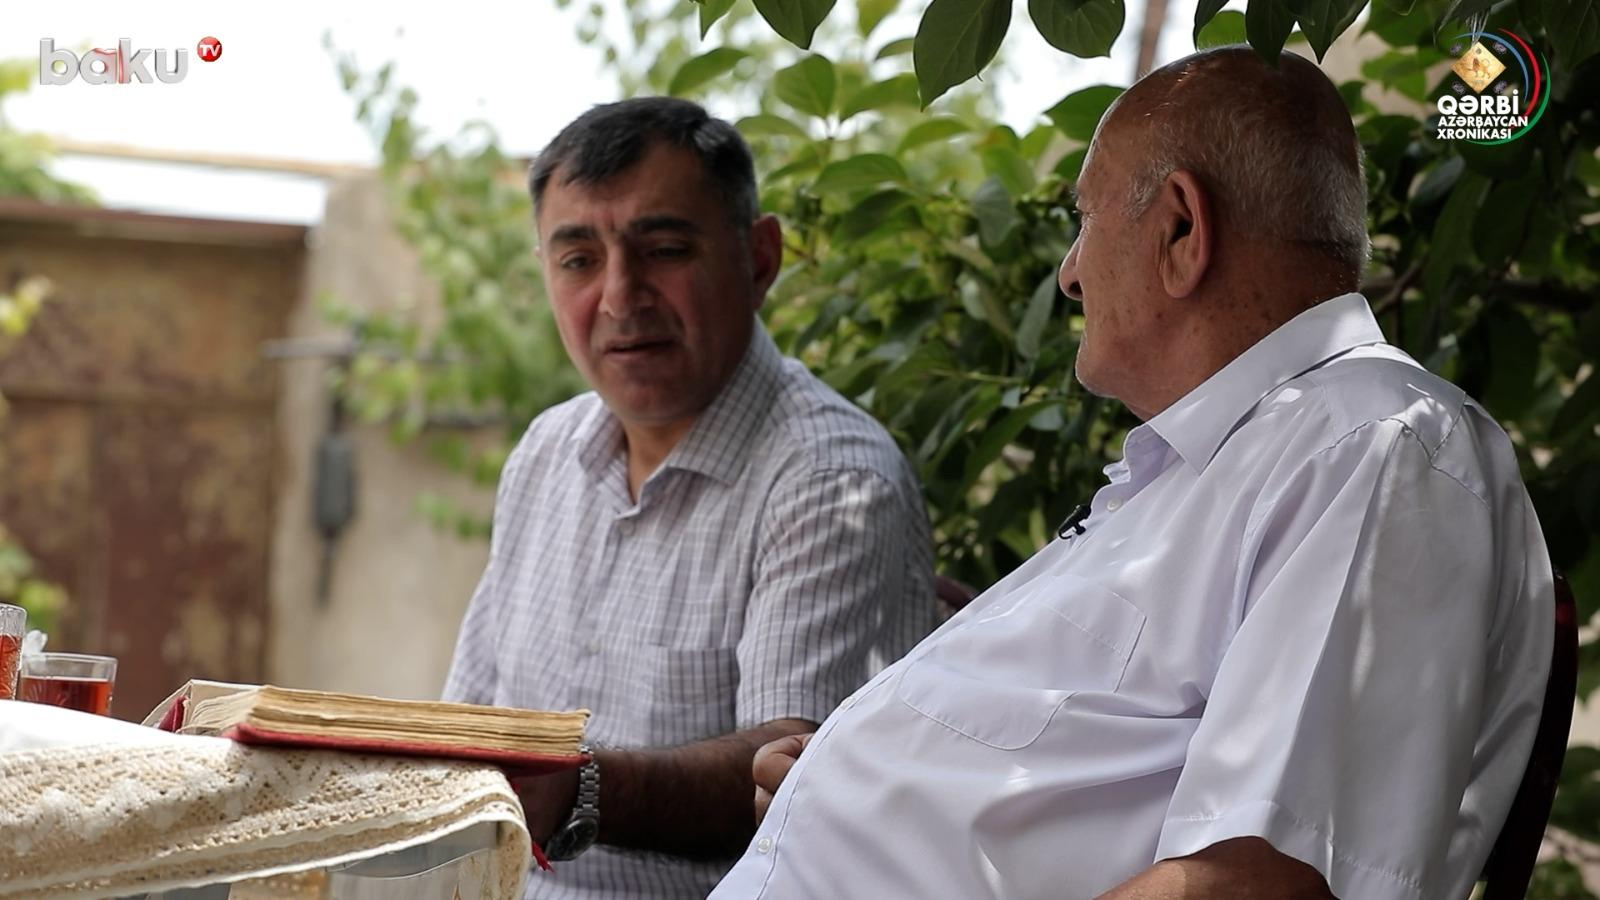 Qərbi Azərbaycan Xronikası: “Ölüm də olsa, gedib orada öləcəm” - VİDEO